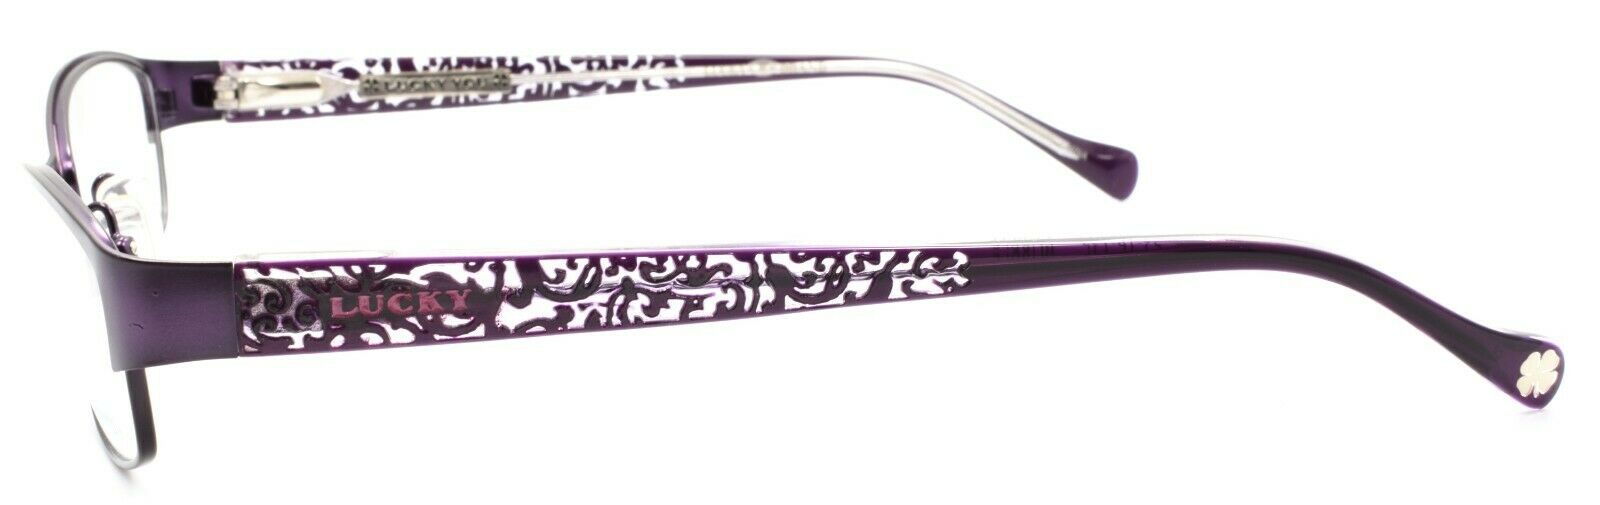 3-LUCKY BRAND Delilah Women's Eyeglasses Frames 52-16-135 Purple + CASE-751286205350-IKSpecs